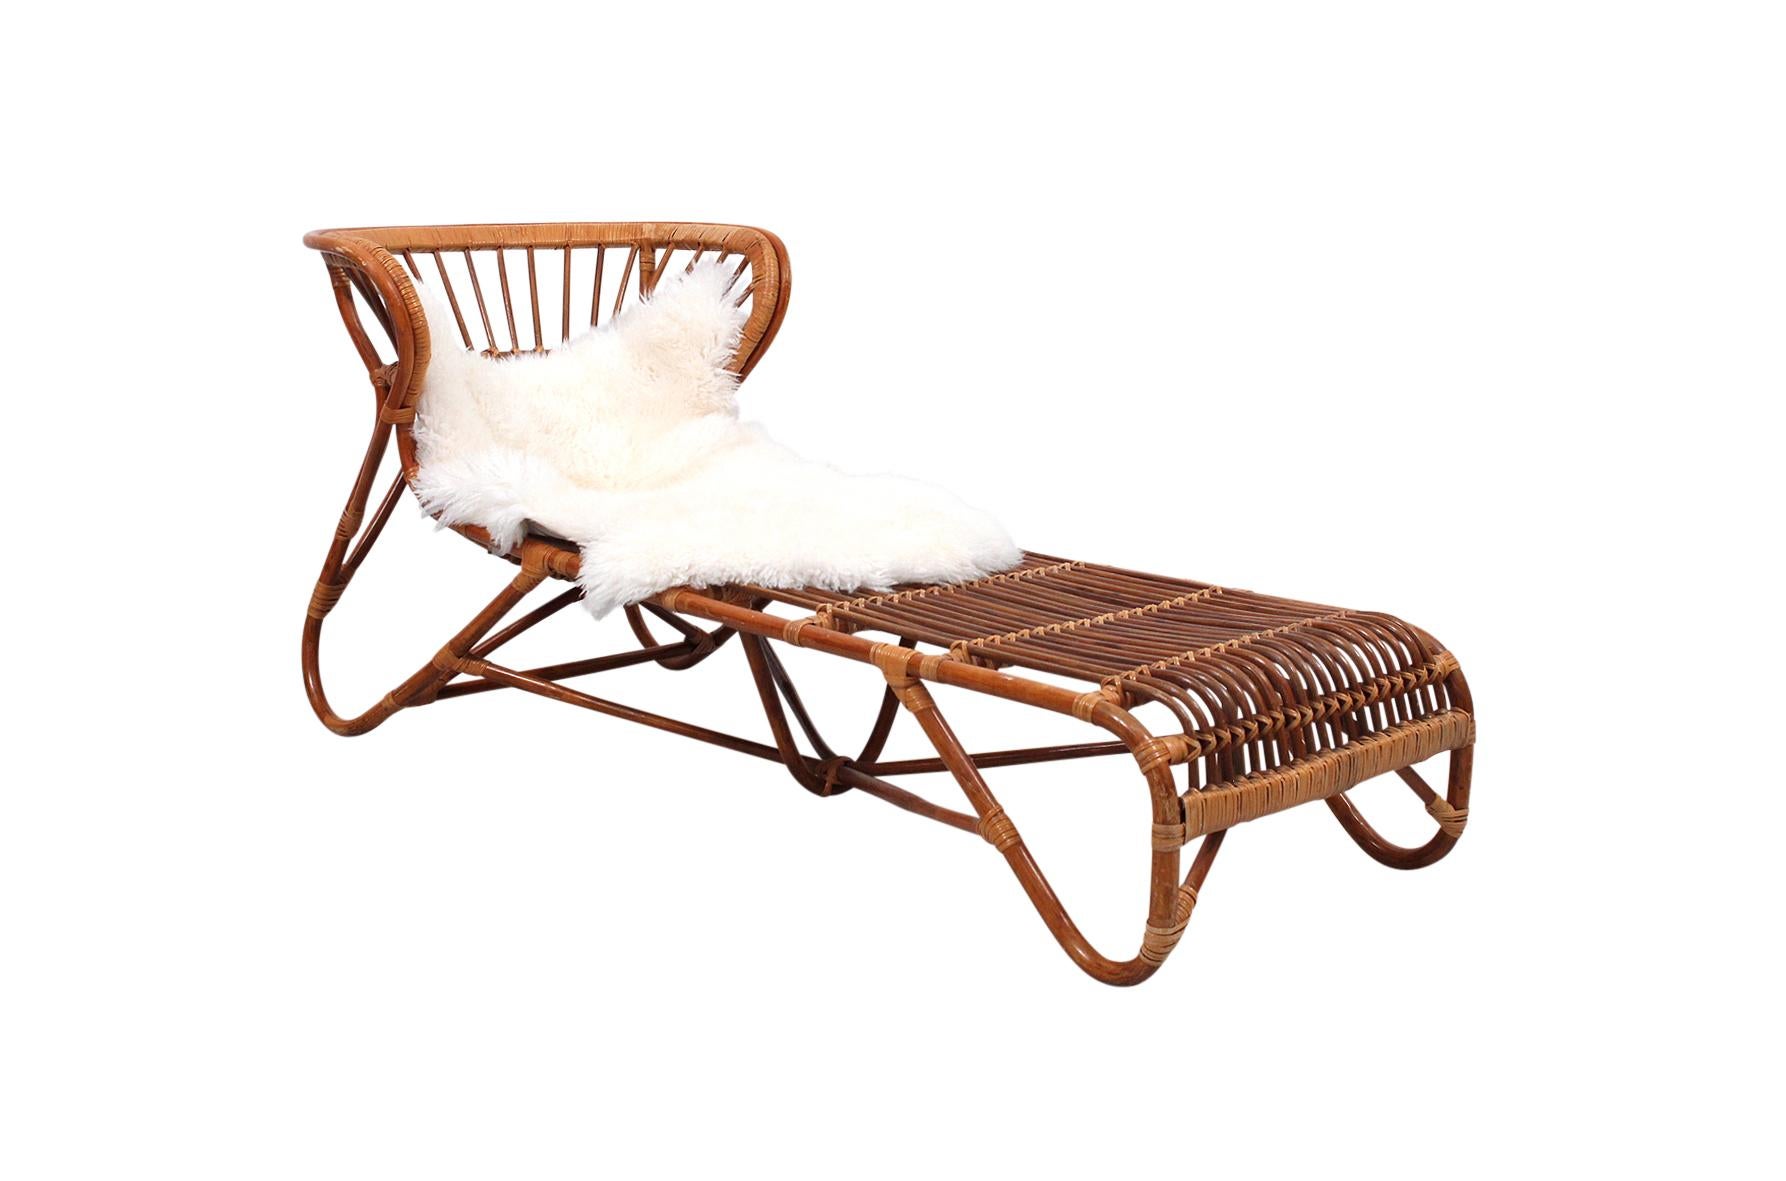 Rare Franco Albini rattan and bamboo chaise lounge chair designed in the 1960s for Vittorio Bonacina.
 